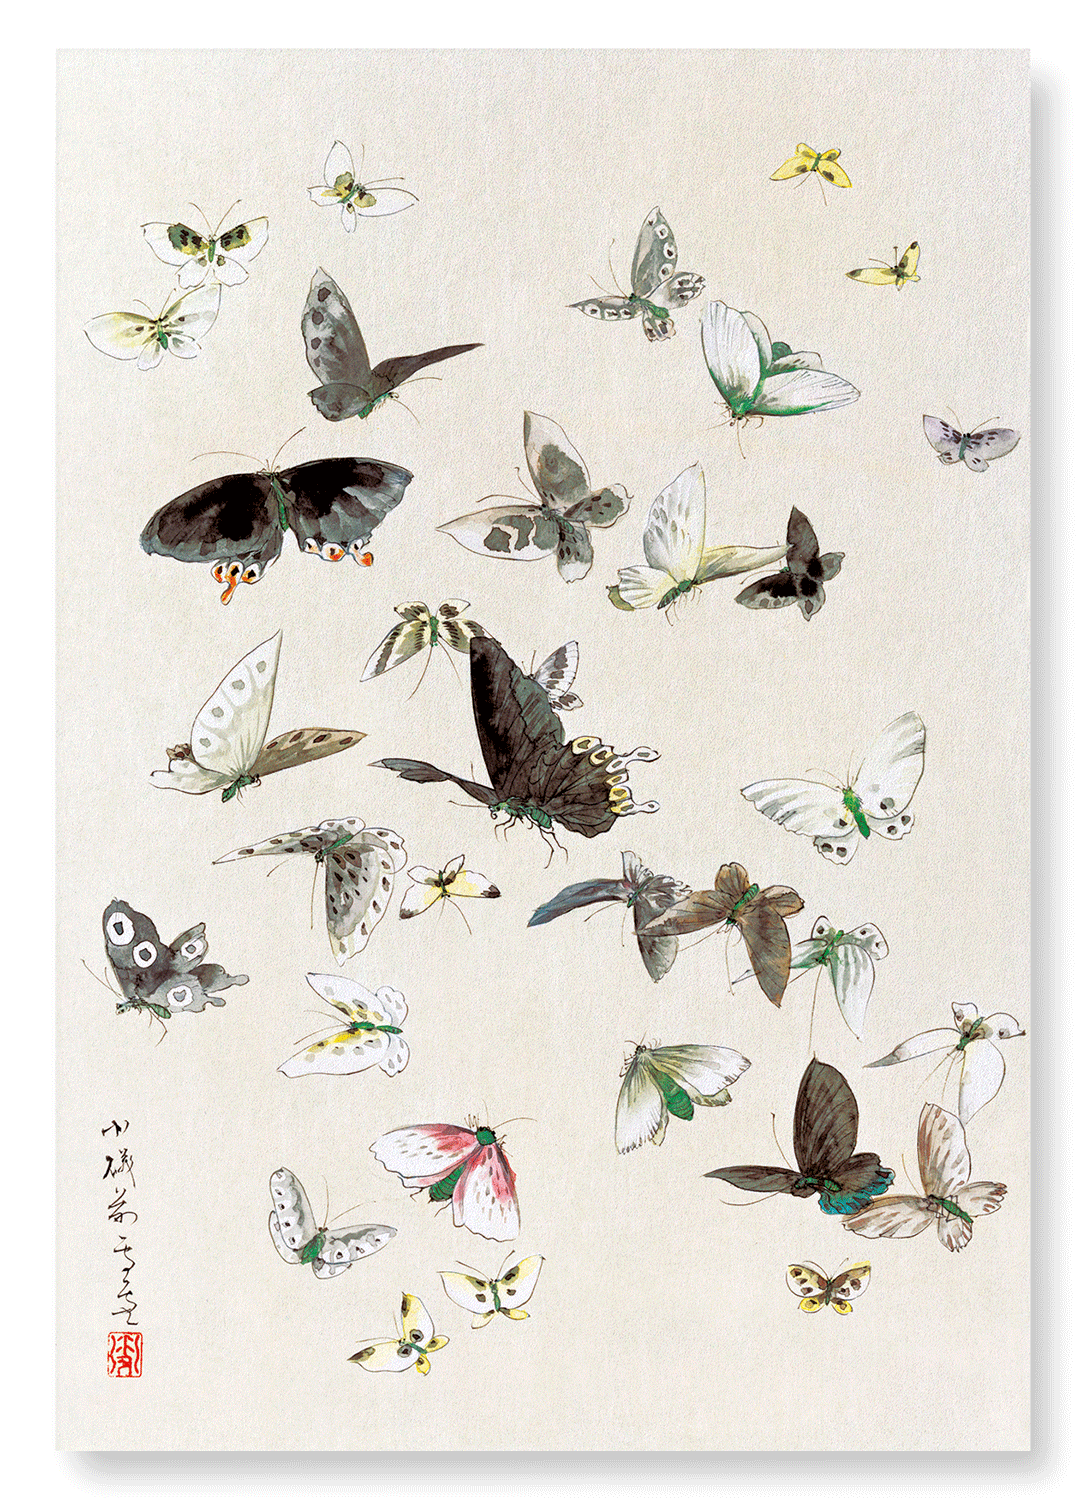 BUTTERLFLIES AND MOTHS (1830-1850): Japanese Art Print